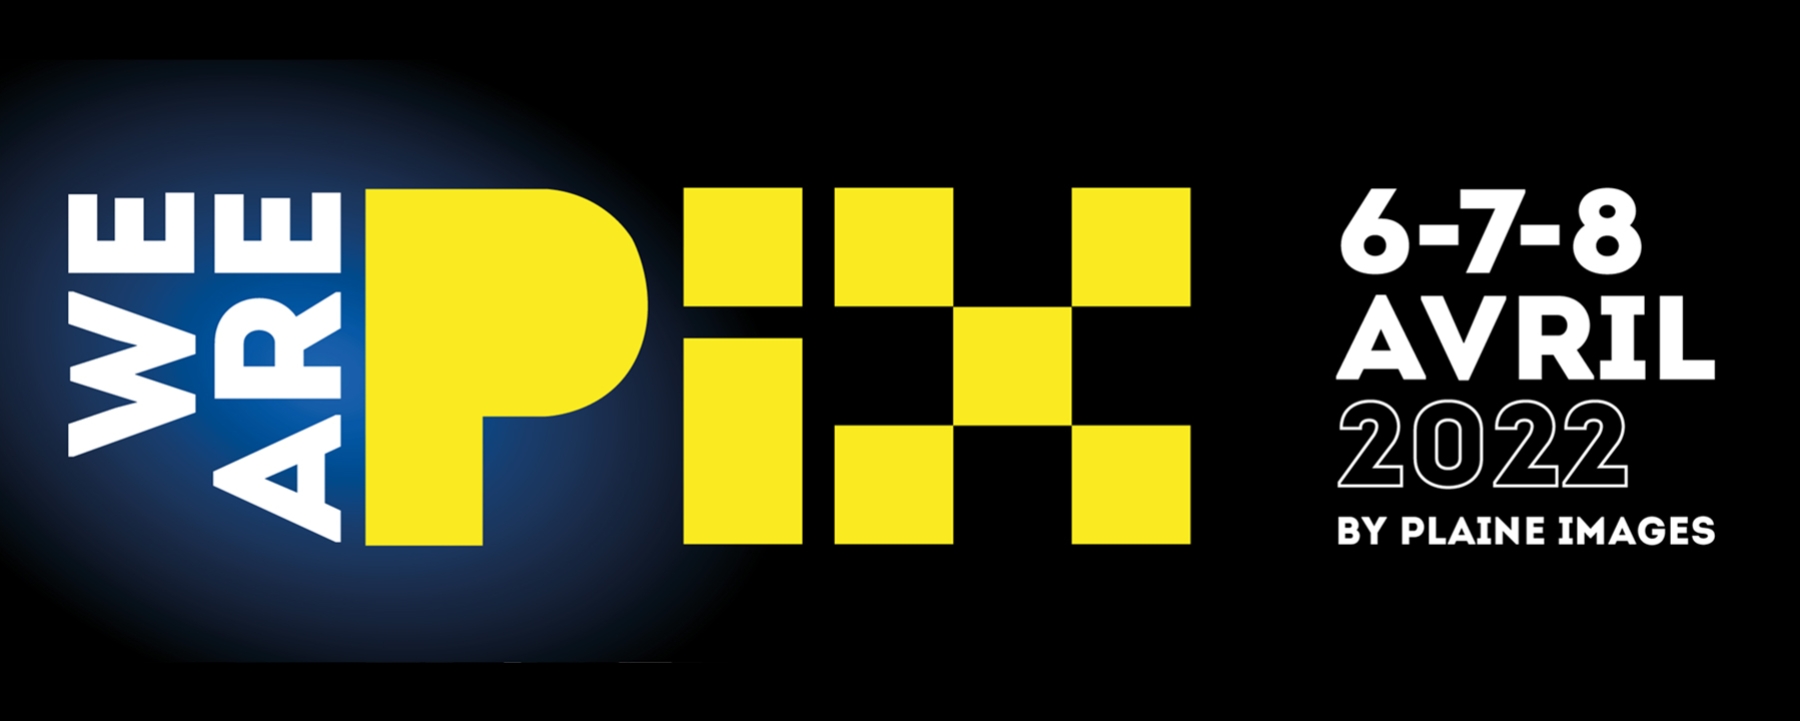 Plaine Images logo